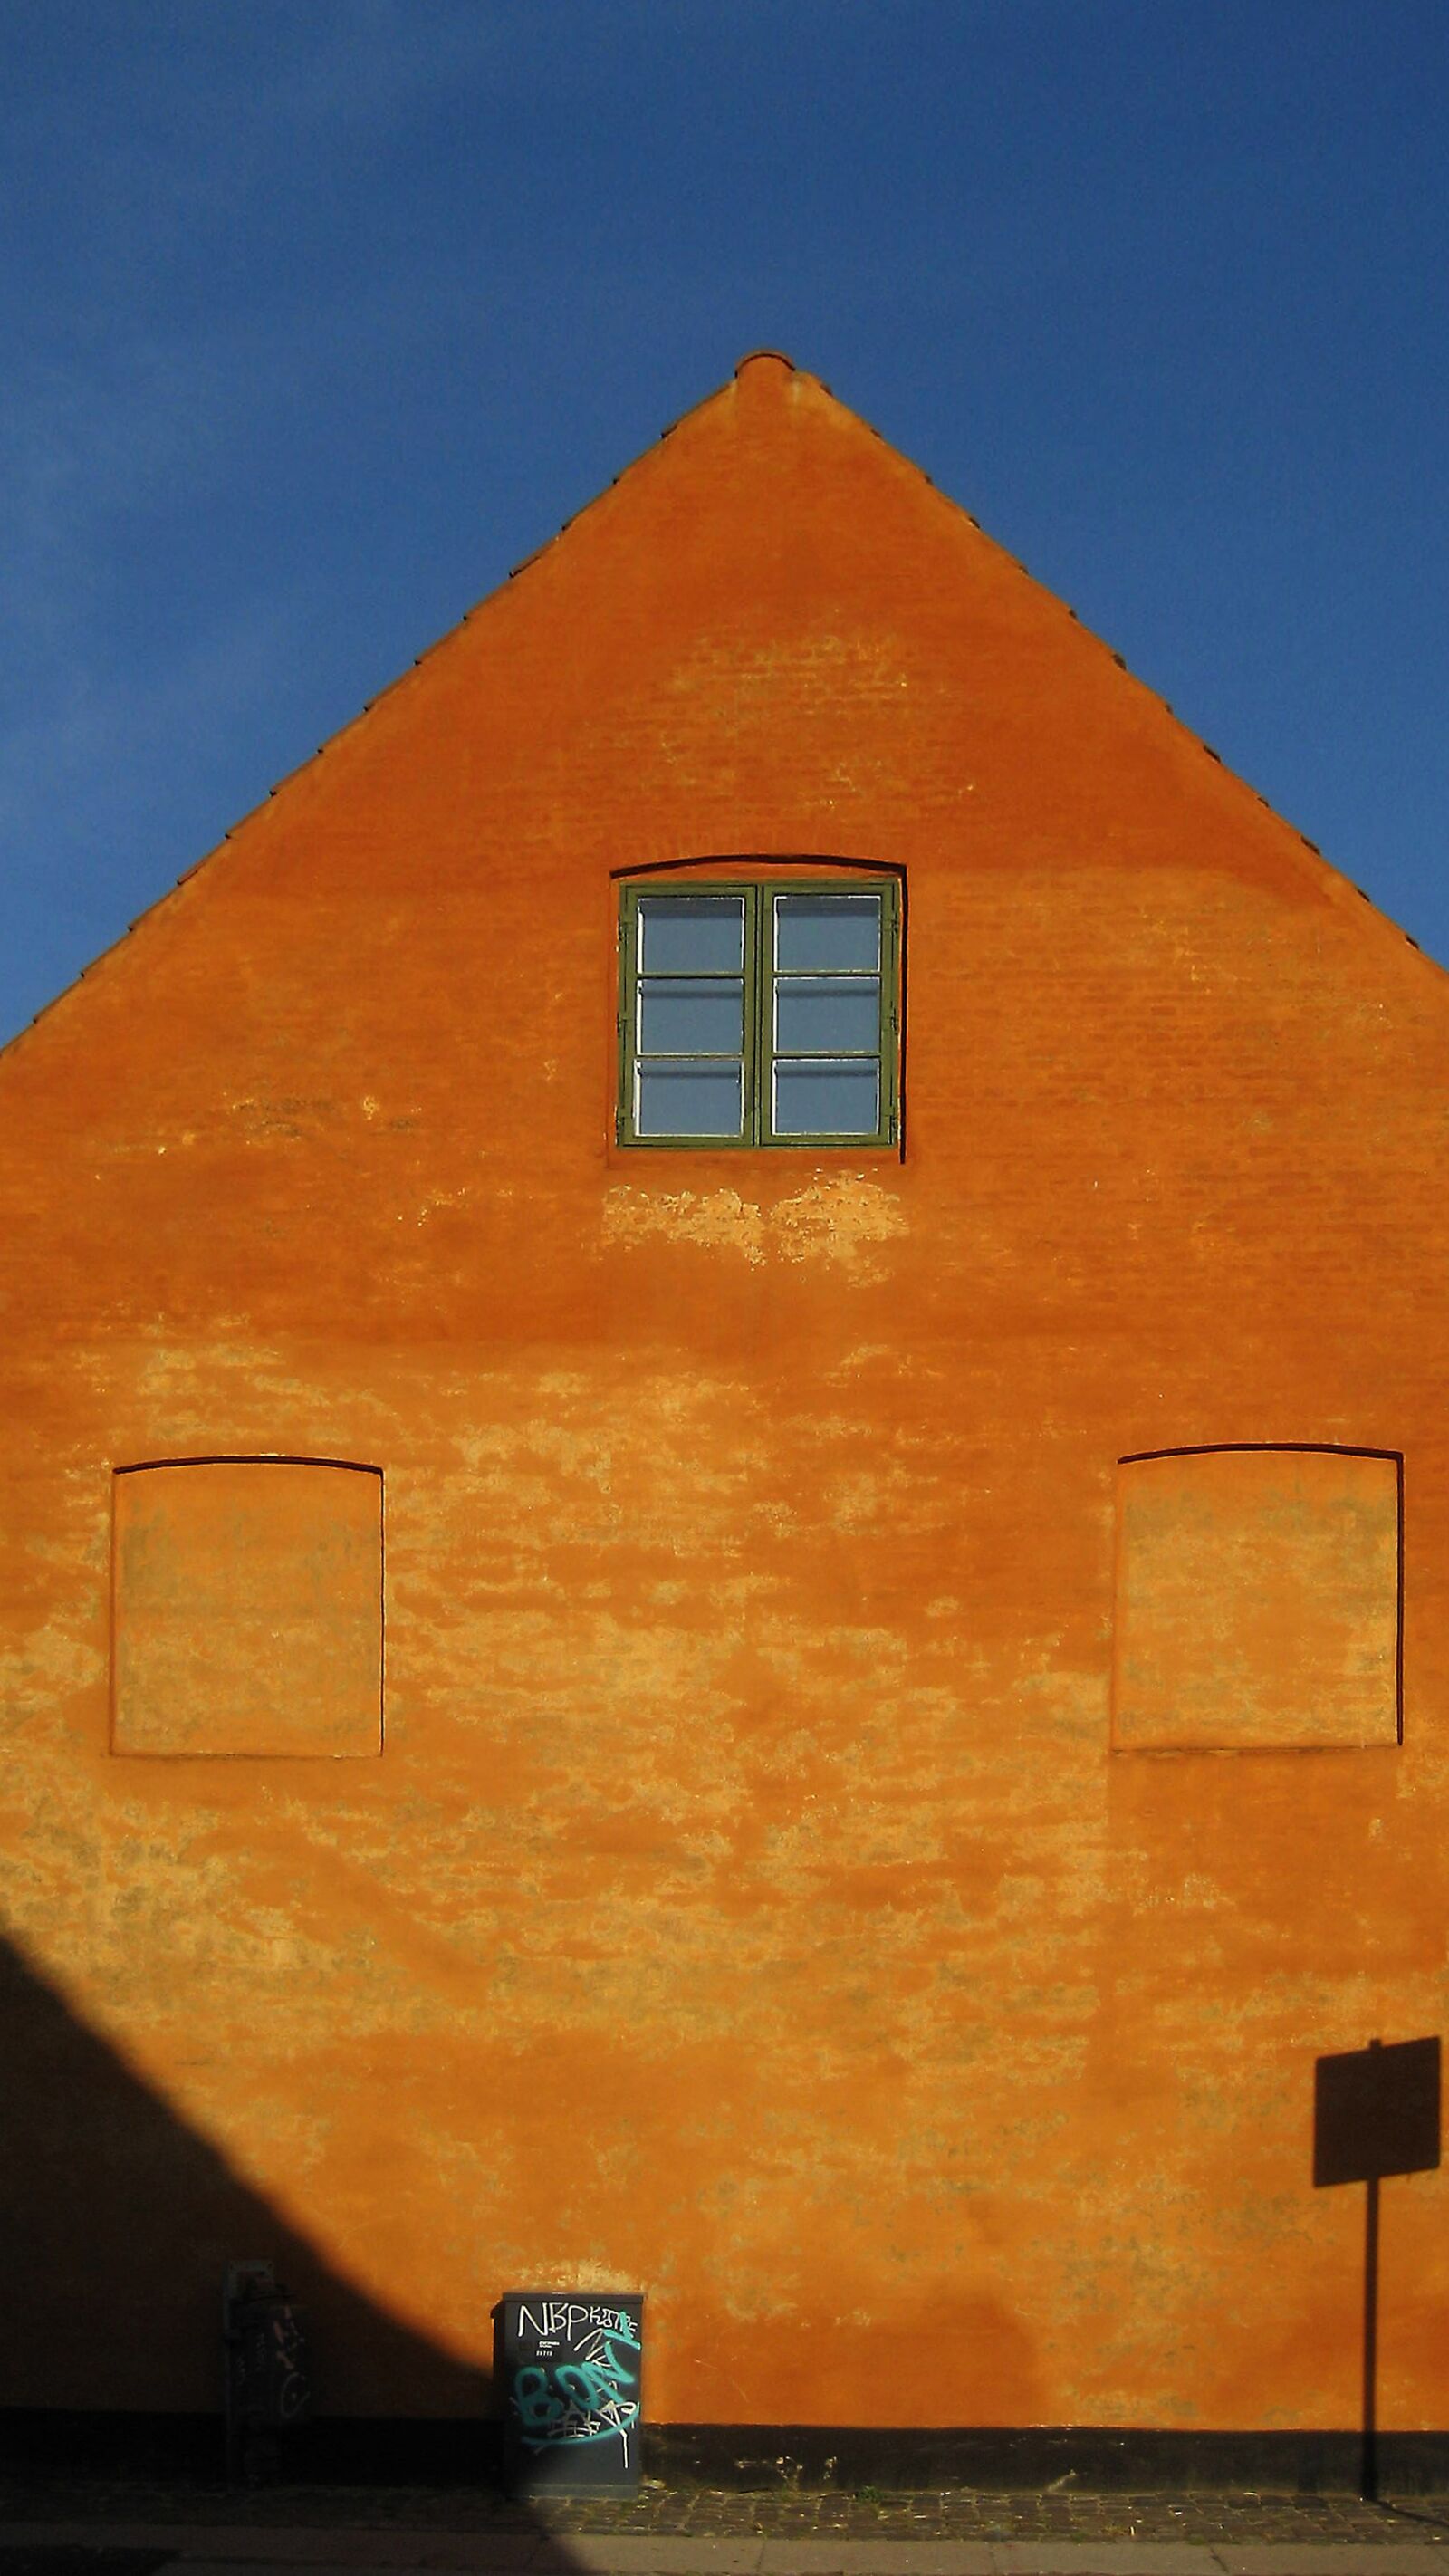 Canon DIGITAL IXUS 60 sample photo. House, orange, facade photography